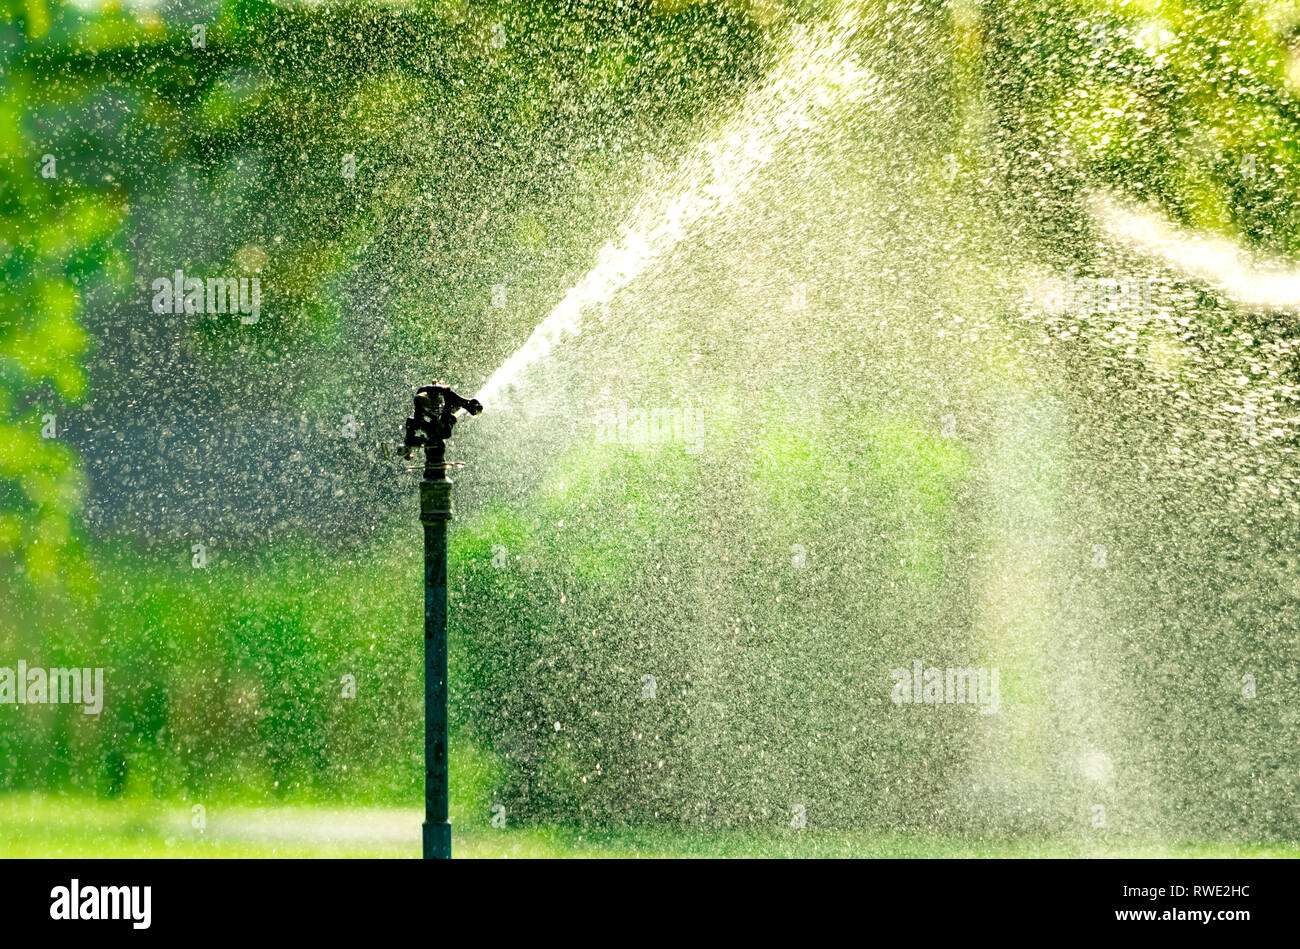 Home Sprinkler System Cost